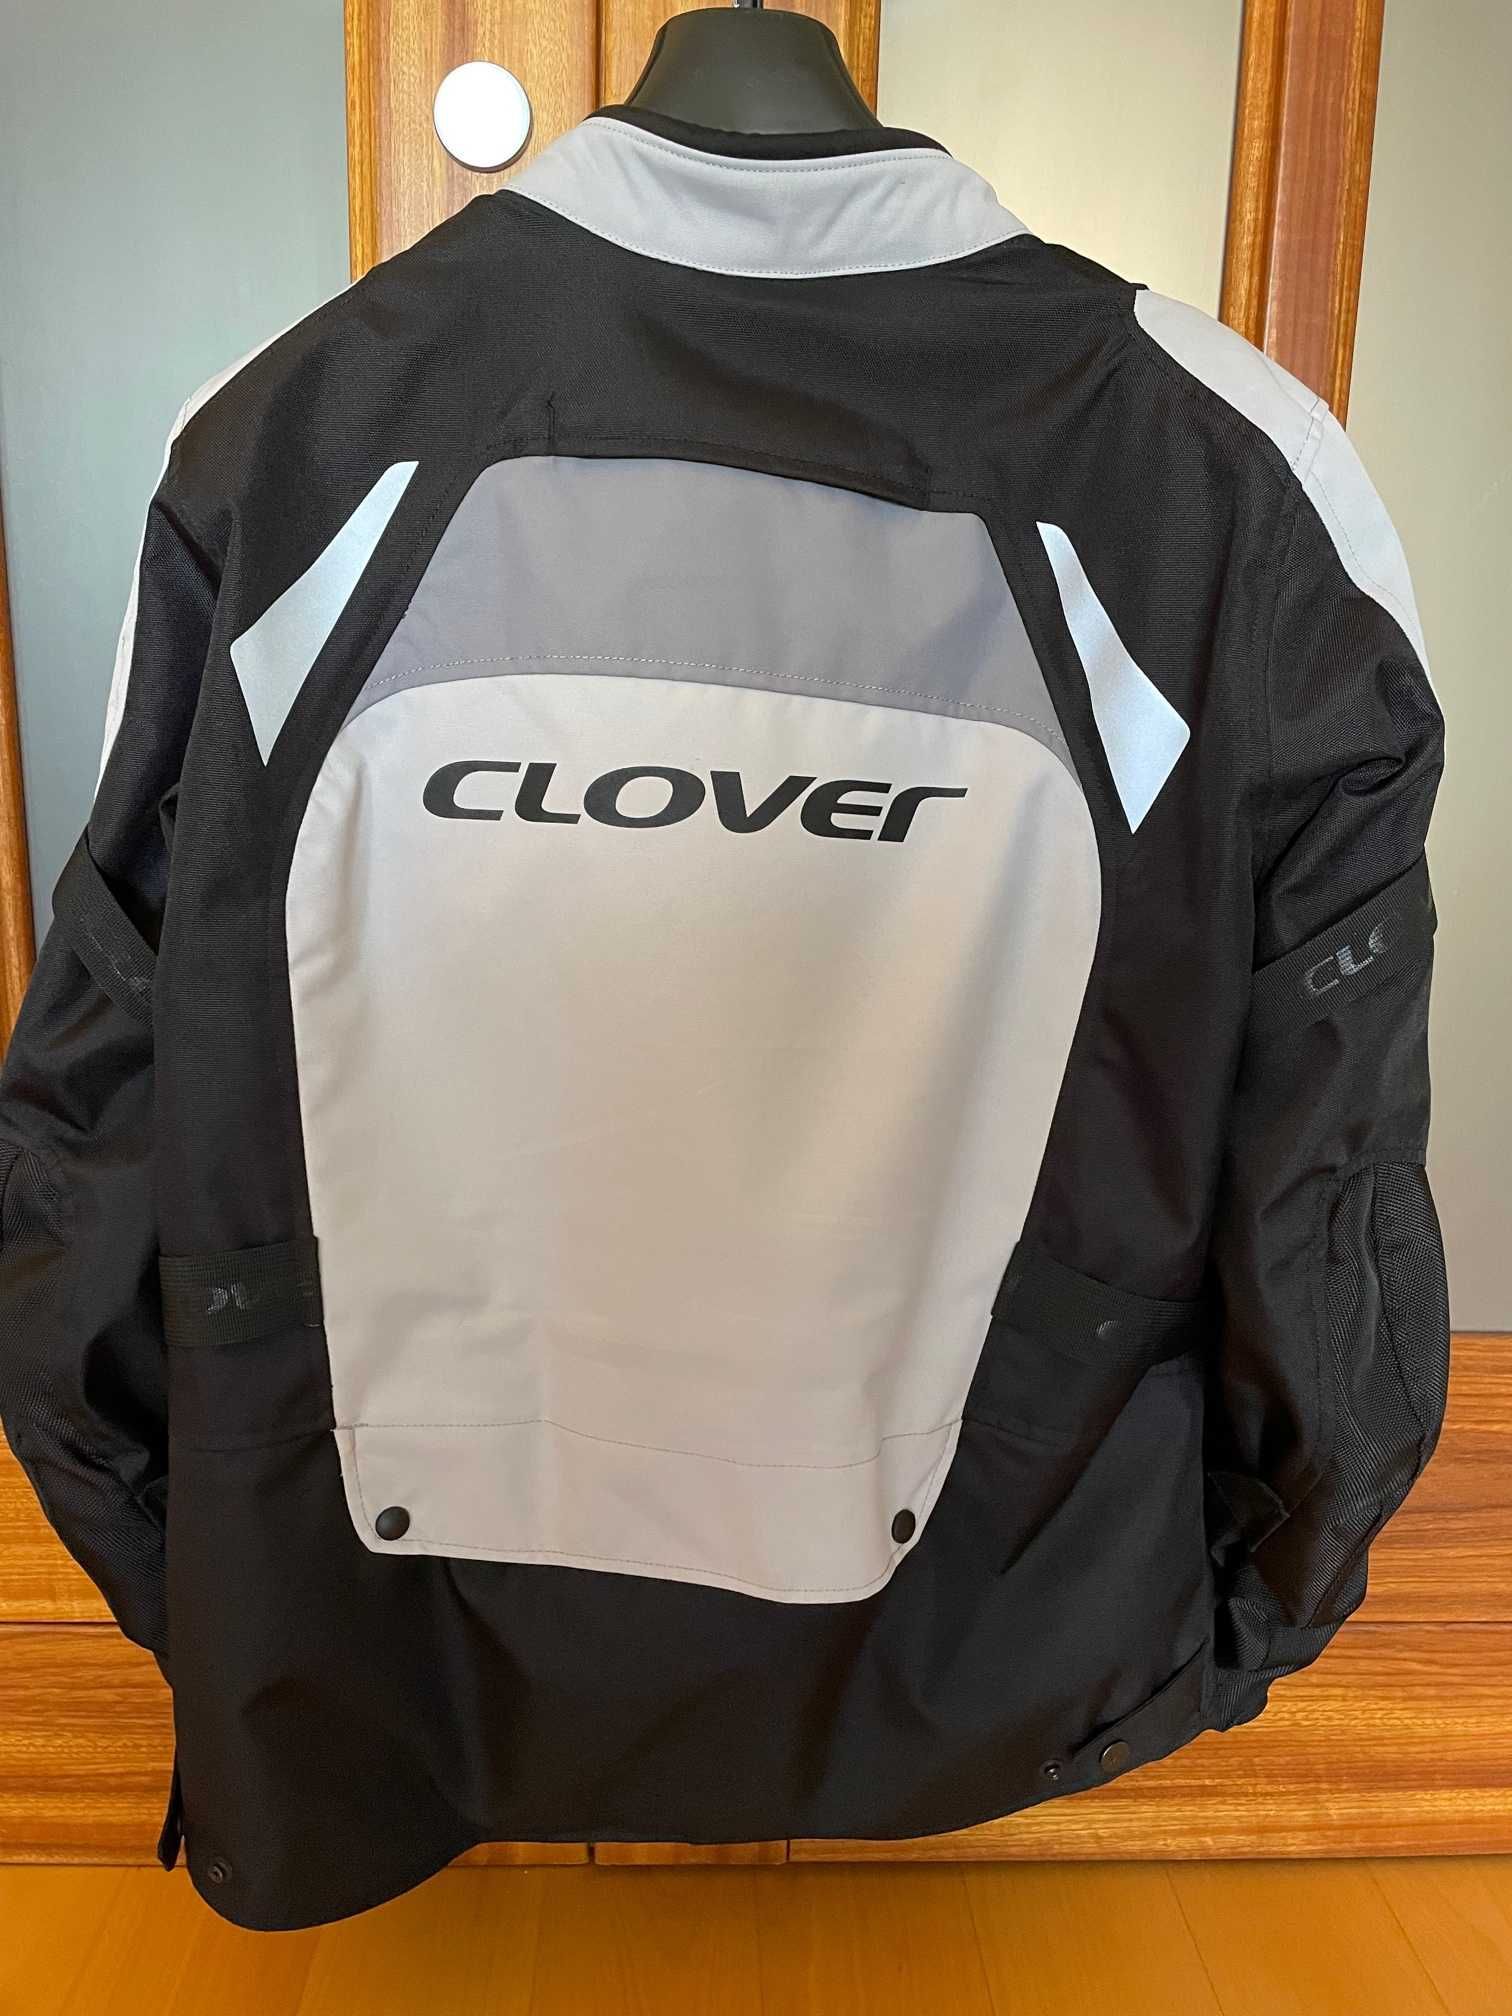 Blusão Clover XL + Proteção Nivel 2 dorsal incluido.